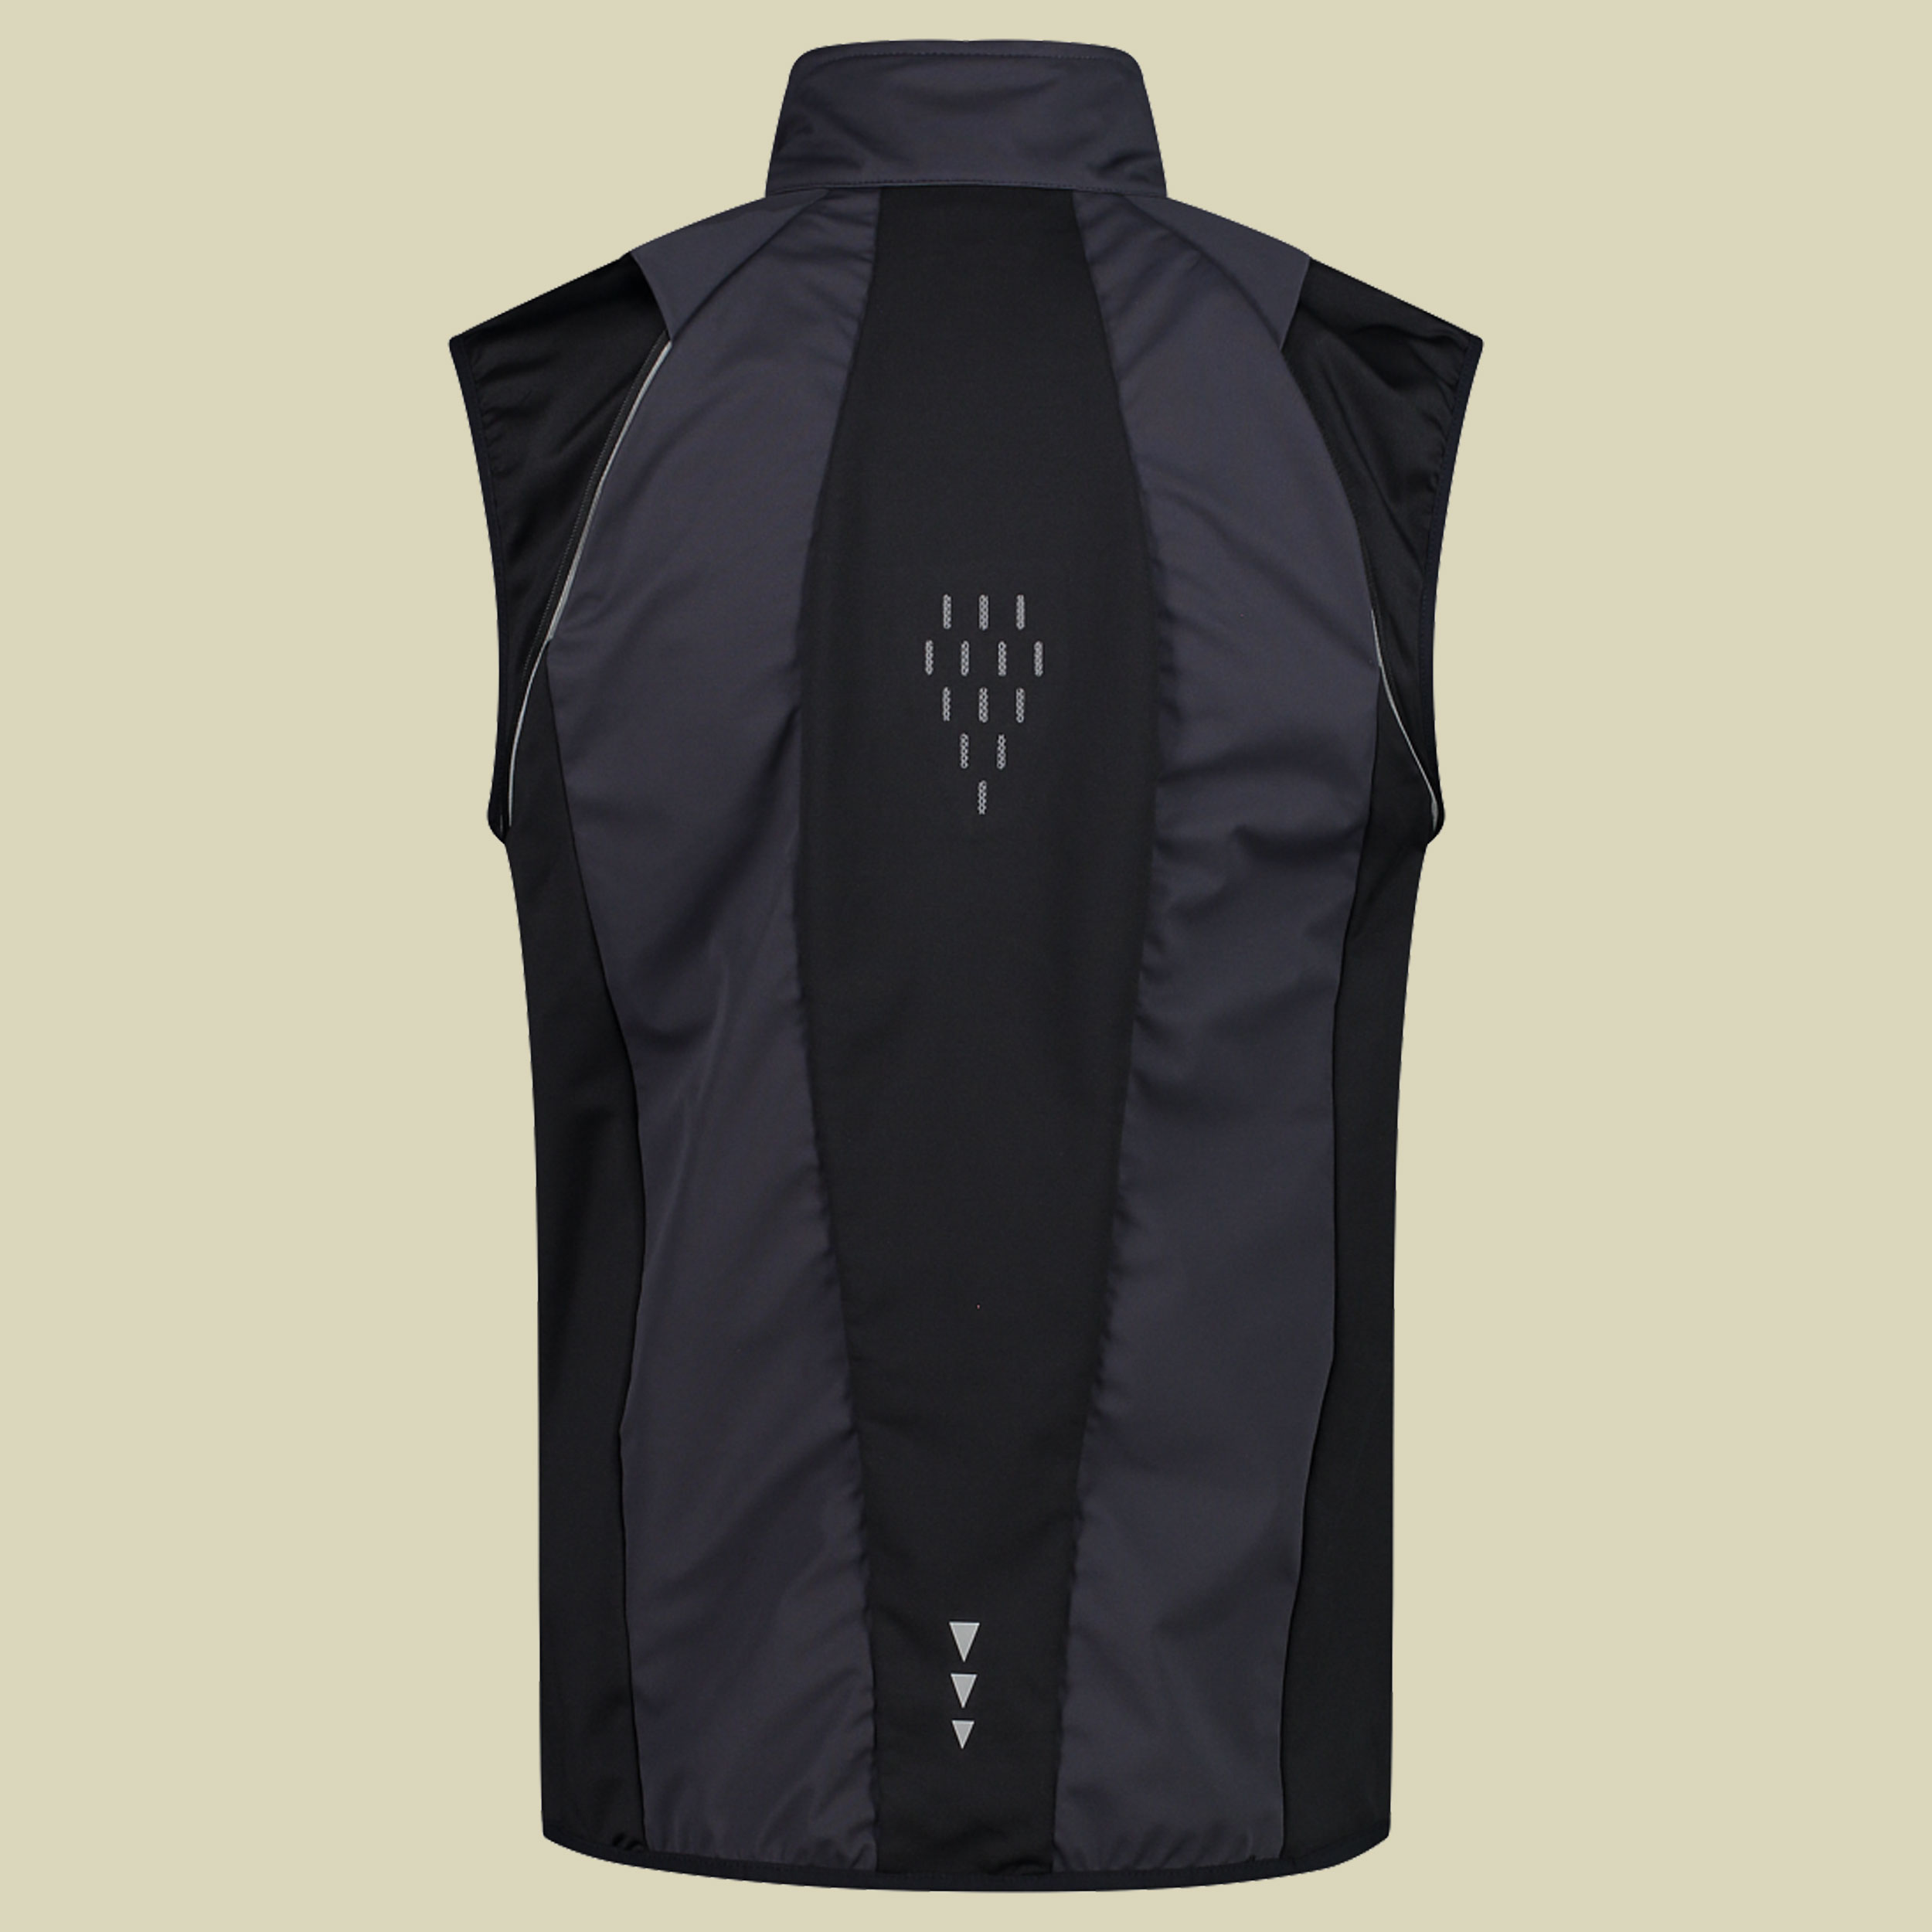 Man Jacket detachable Sleeves 30A2647 Größe 56 Farbe U423 antracite